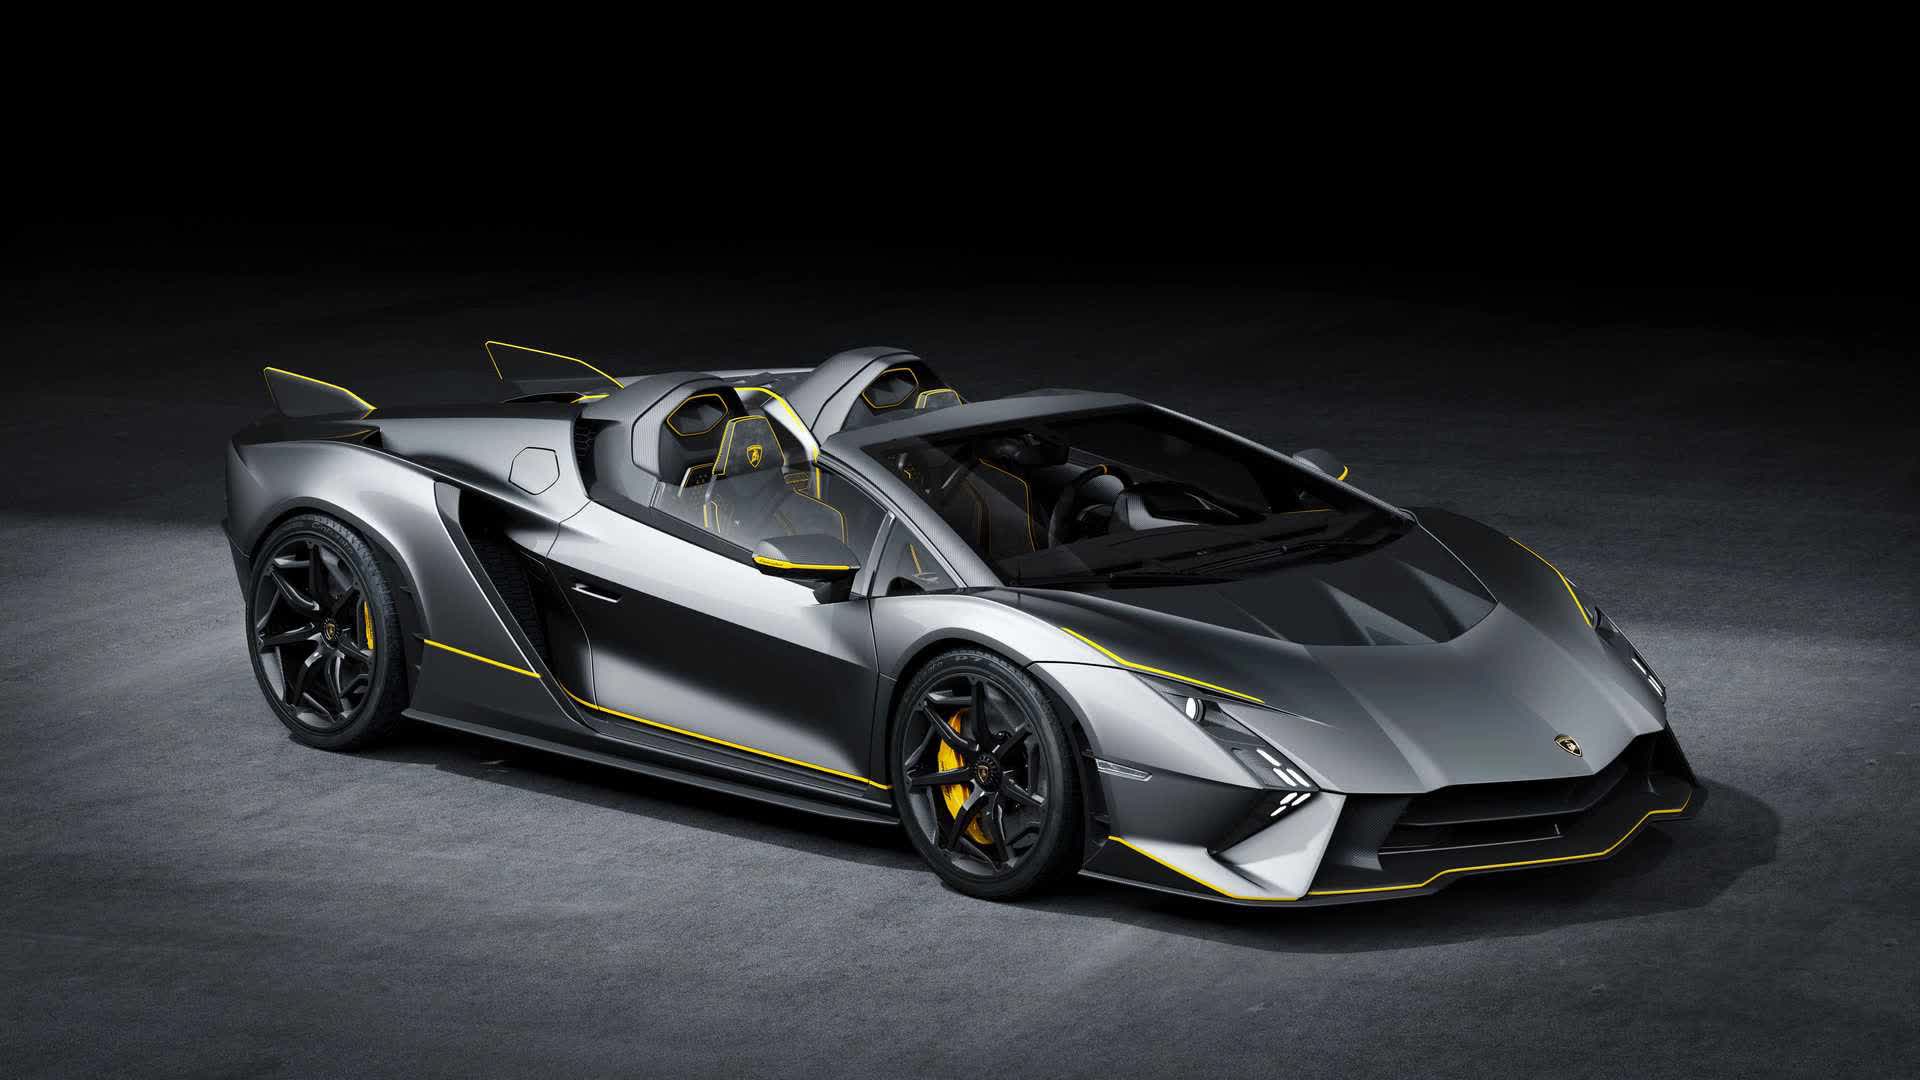 Lamborghini ra mắt bộ đôi siêu xe V12 chạy xăng cuối cùng, sau đây sẽ toàn siêu xe điện êm ru chưa biết nẹt pô kiểu gì - Ảnh 13.